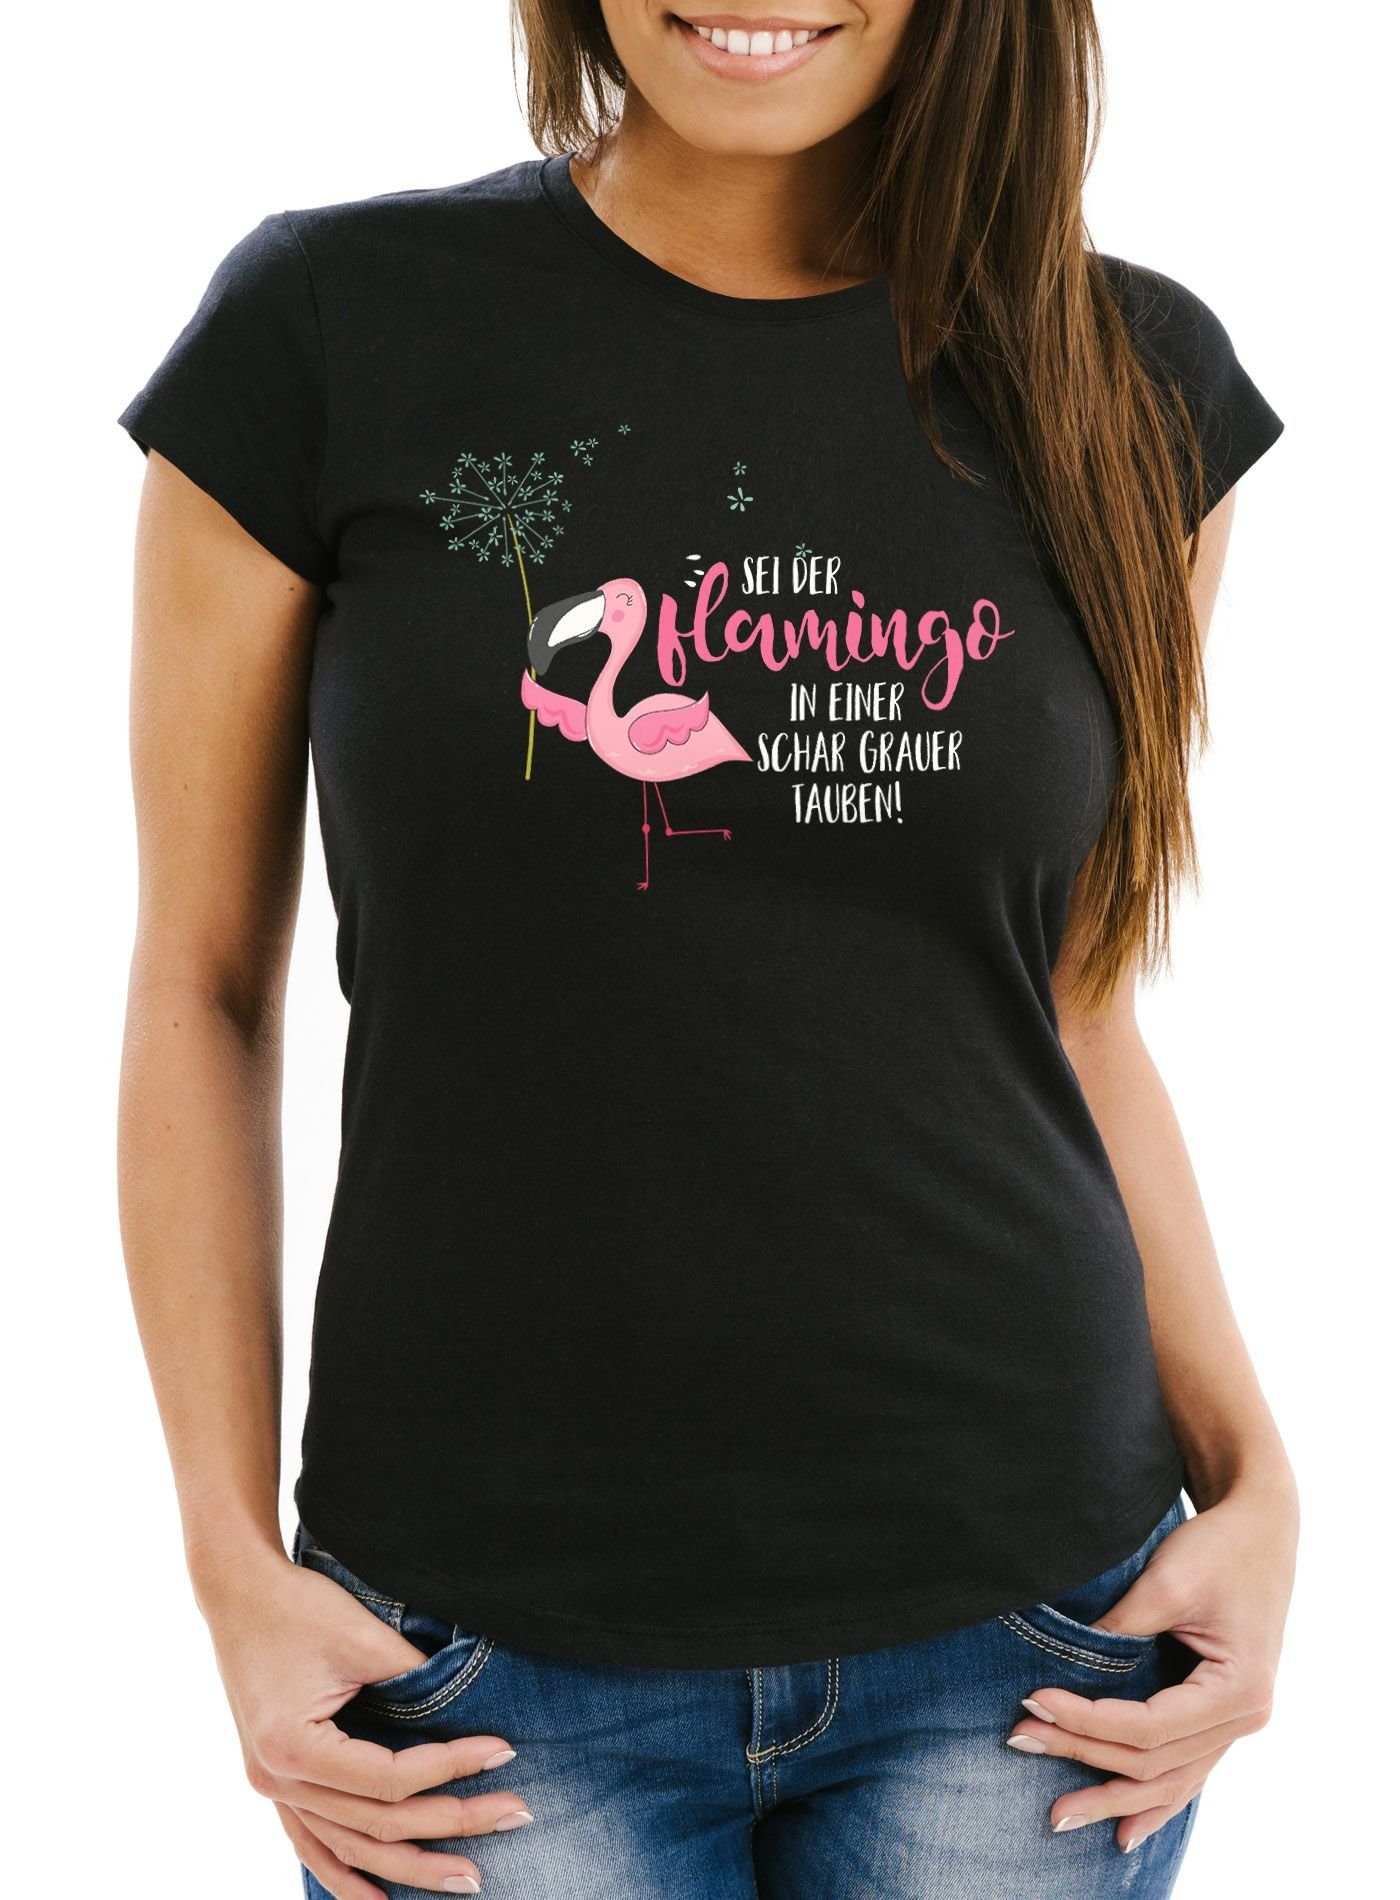 MoonWorks Print-Shirt Damen T-Shirt sei der Flamingo in einer Schar grauer Tauben Slim Fit Spruch Flamingo Pusteblume Moonworks® mit Print schwarz